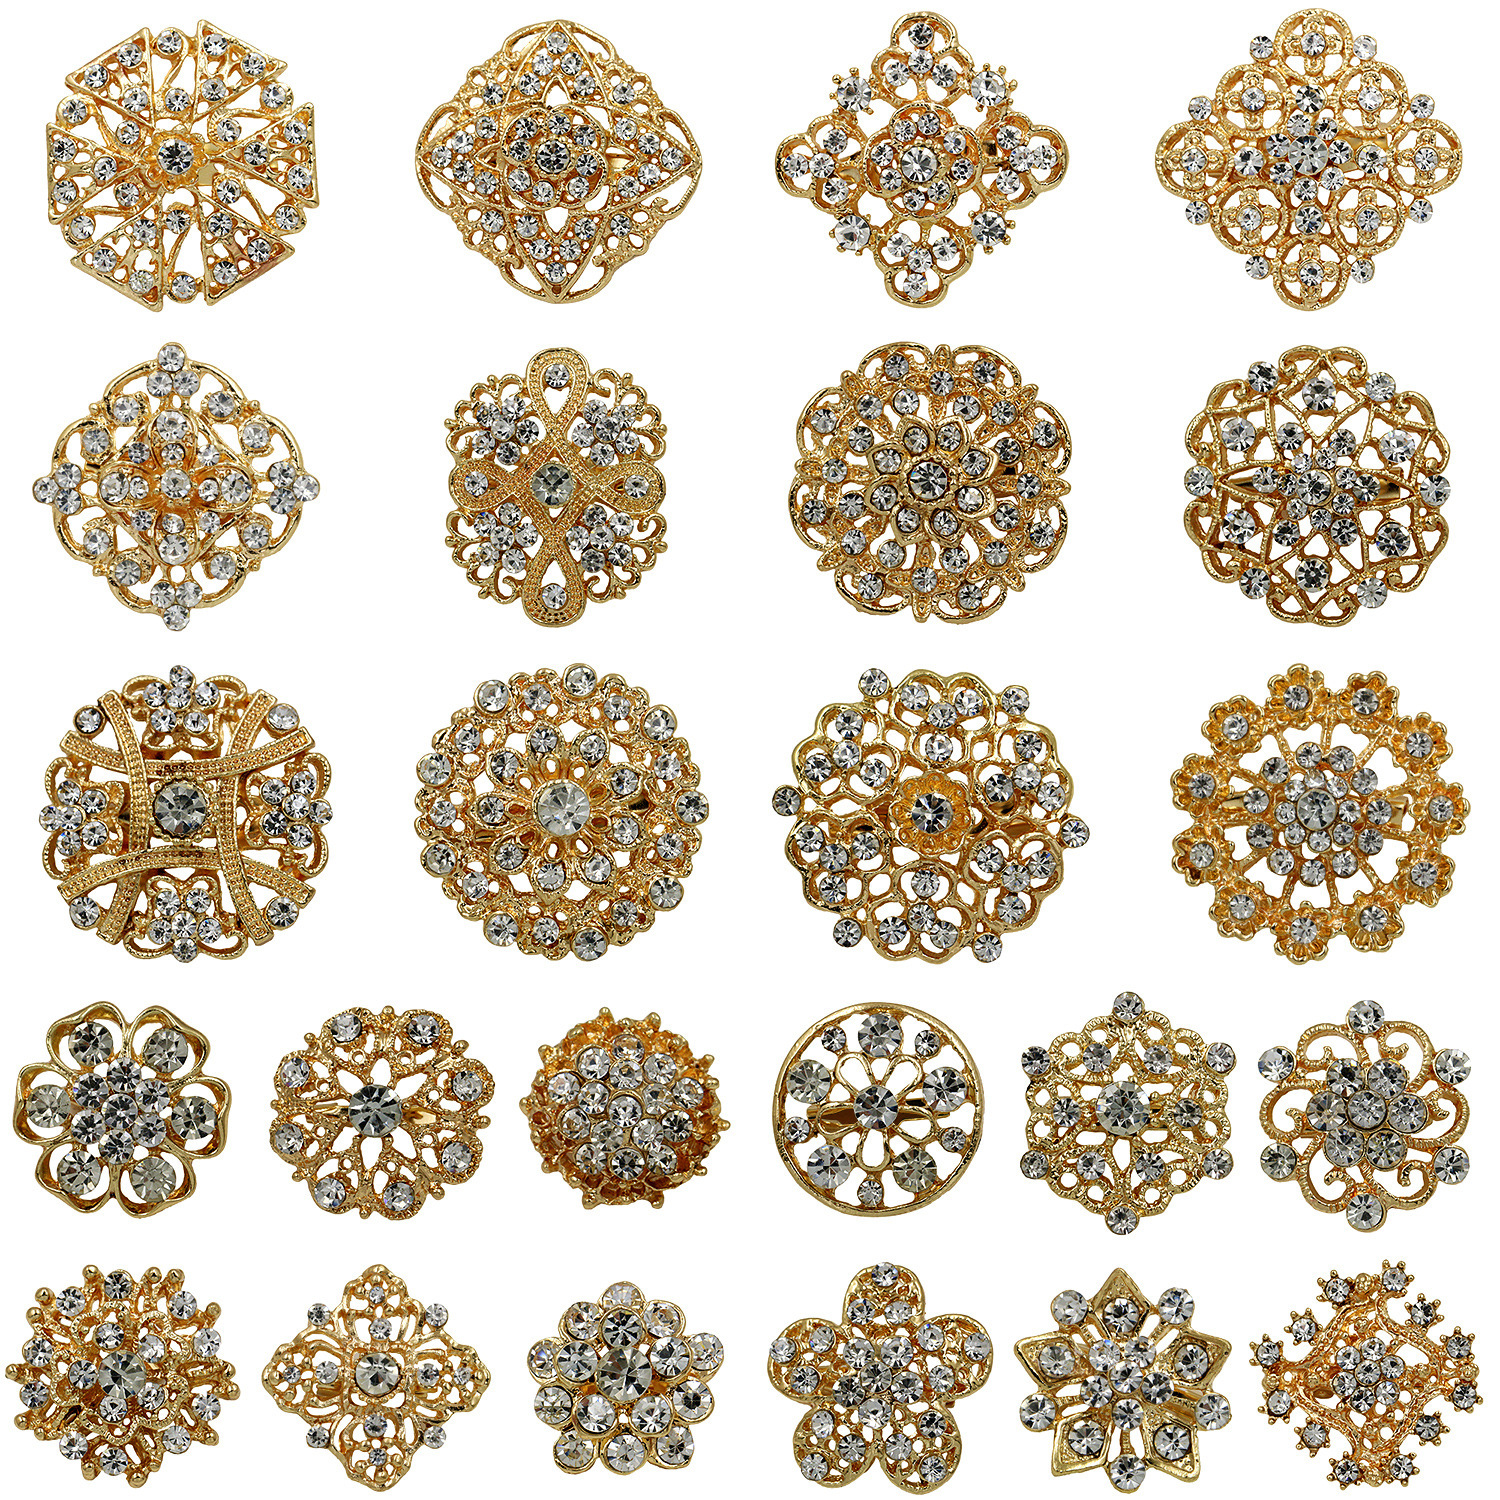 kz001+kz002--24 set of golden white diamonds